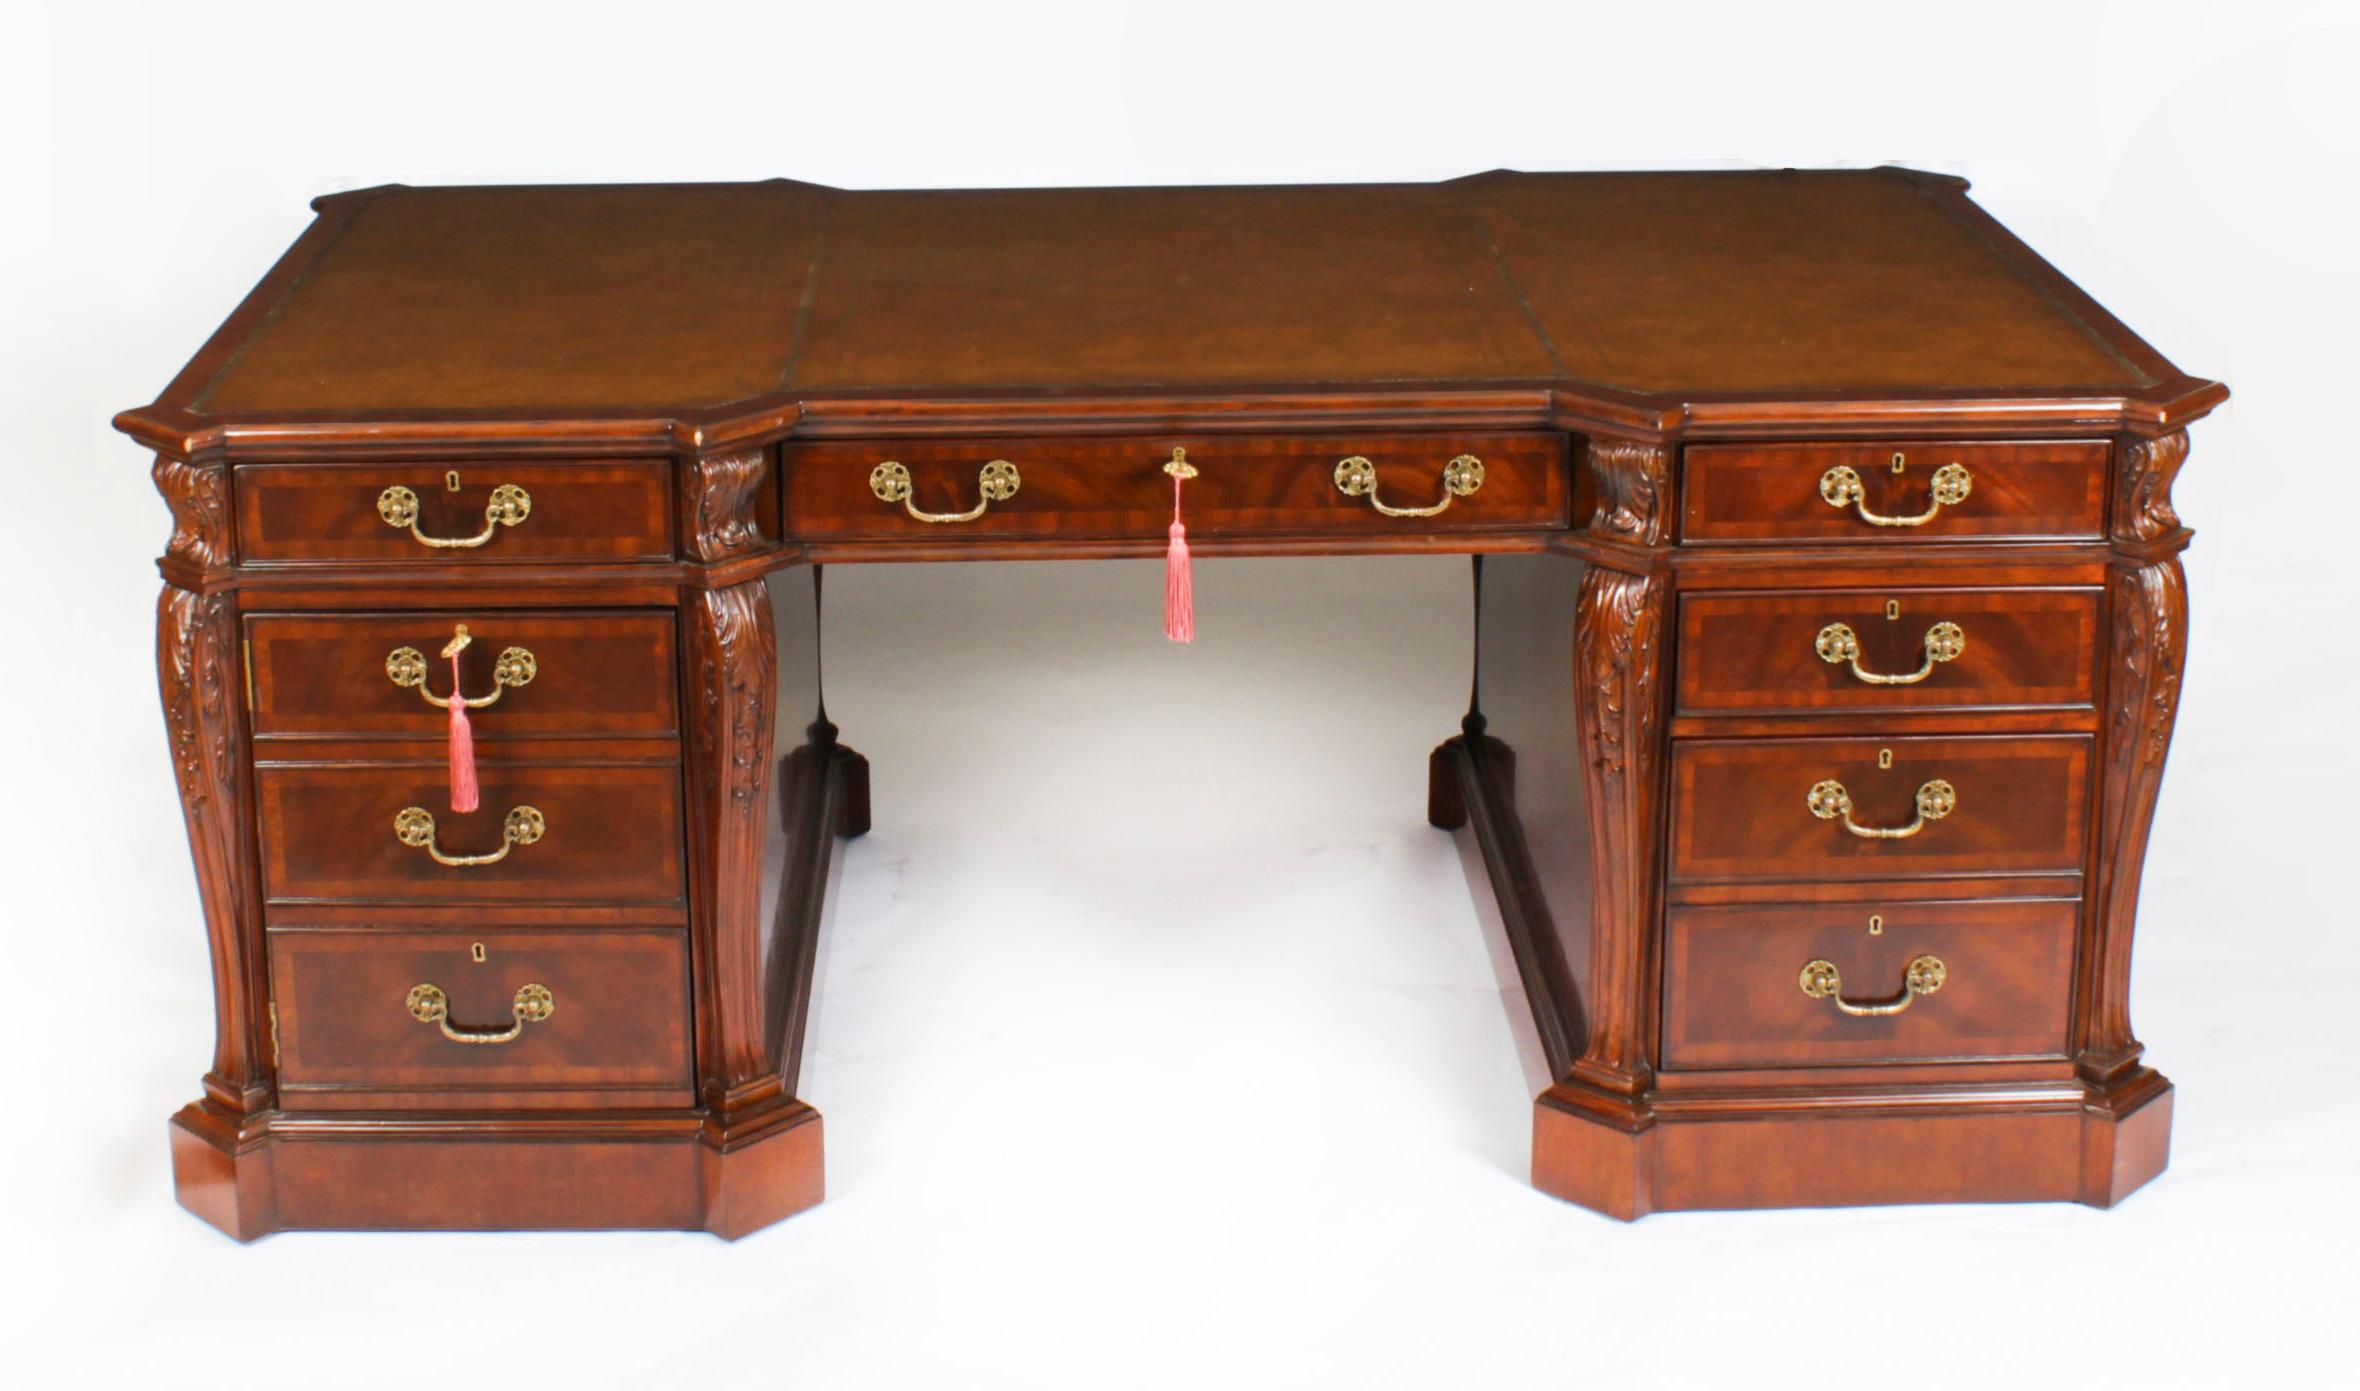 Ein exquisiter Vintage By  geflammter Mahagoni-Partnerschreibtisch, der aus dem späten 20. Jahrhundert stammt.

Dieser Schreibtisch wurde in georgianischer Manier gefertigt und ist wunderschön aus geflammtem Mahagoni mit einer Verzierung aus